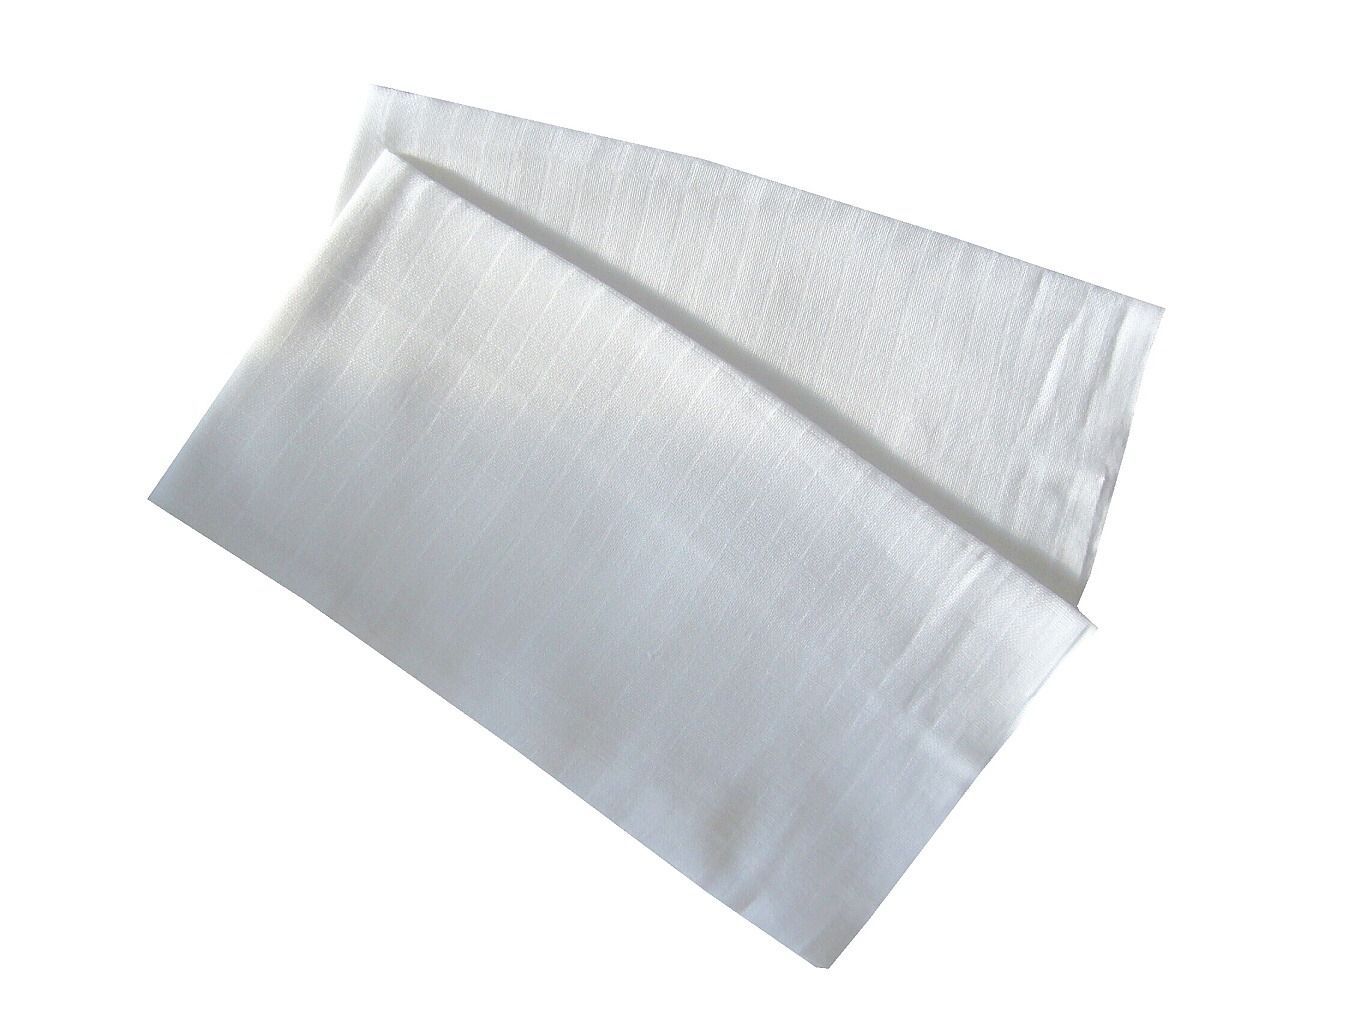 Klasická látková tetra plena pro miminka v barvě bílé (balení 10 ks), PREM INTERNACIONAL